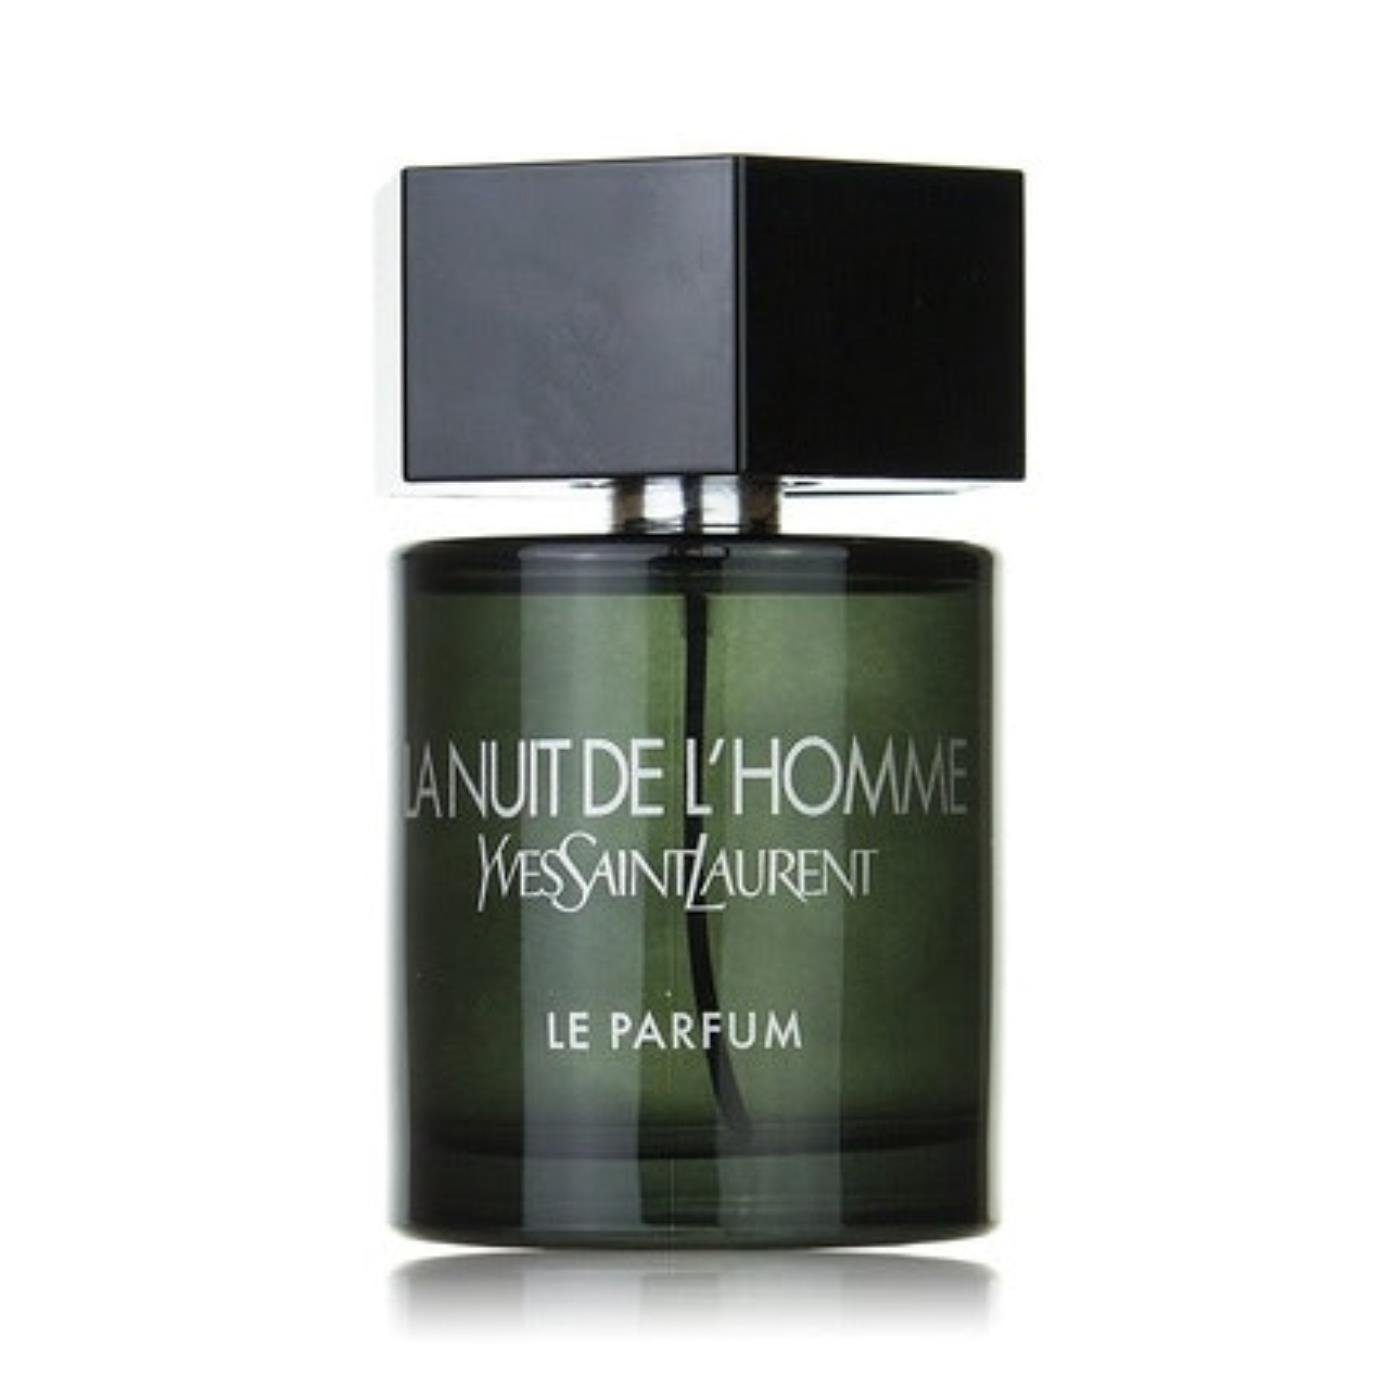 YVES SAINT Saint Eau Parfum de Laurent Nuit Le Parfum LAURENT L'Homme de La Yves